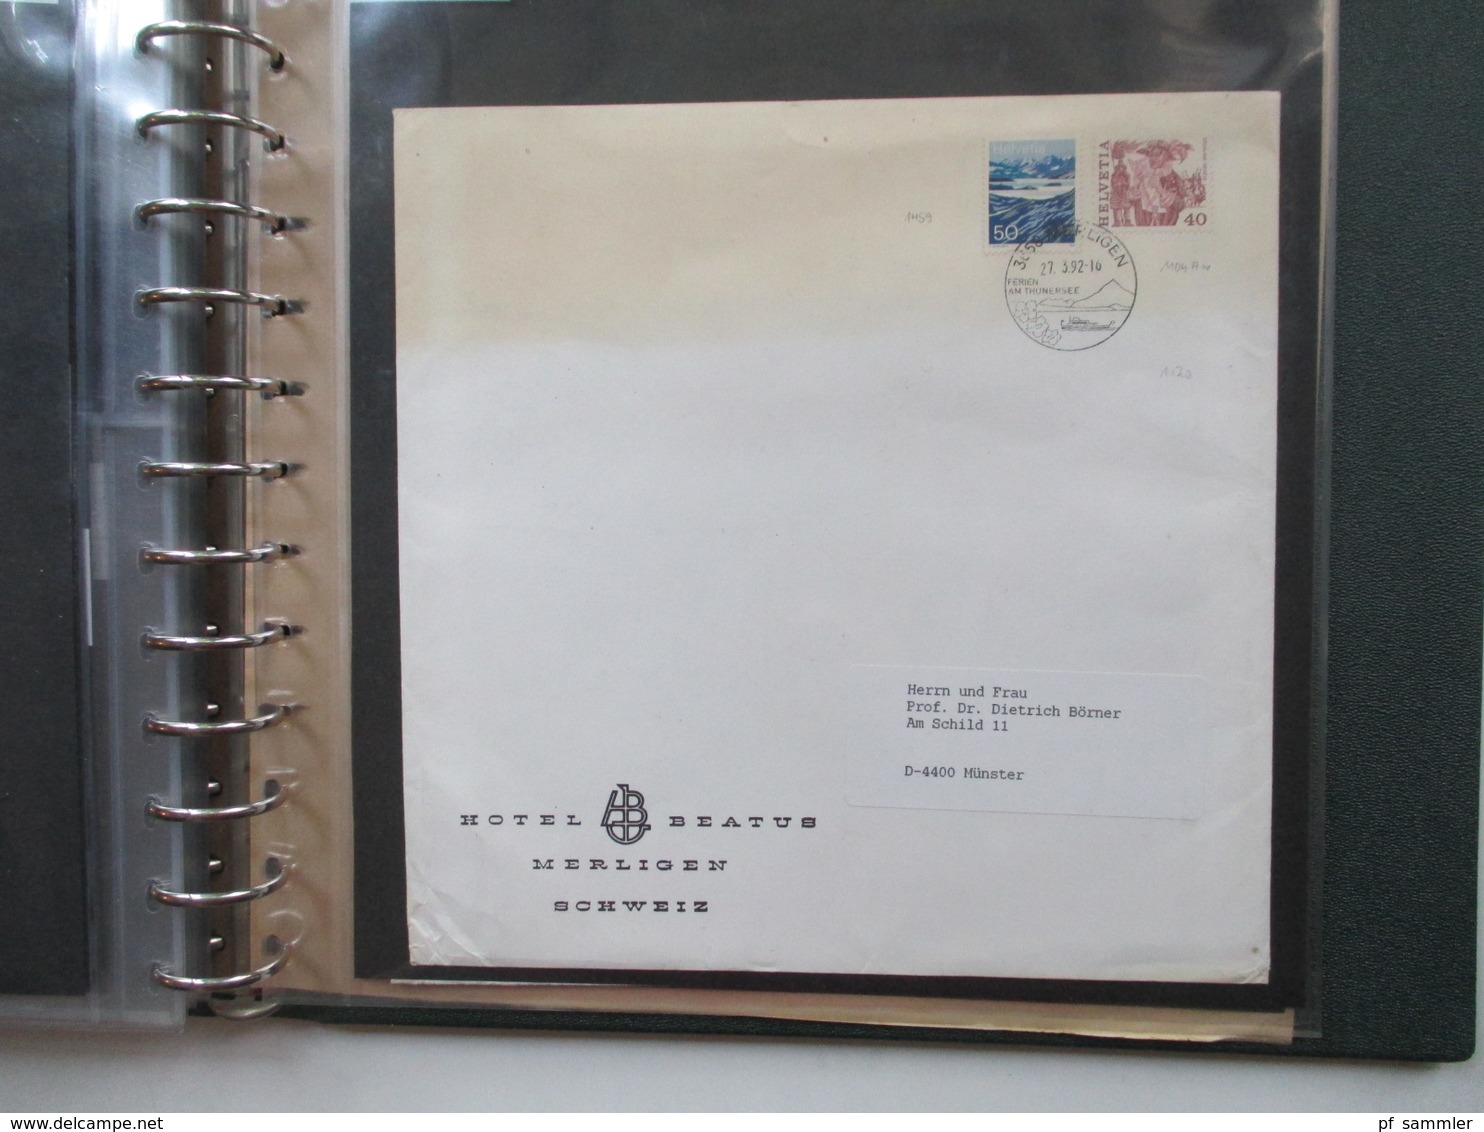 Schweiz 1970 / 80er Jahre Belegeposten / PTT Sonderblätter insg.60 Belege. Auch 4er Blocks und Einschreiben / Express!